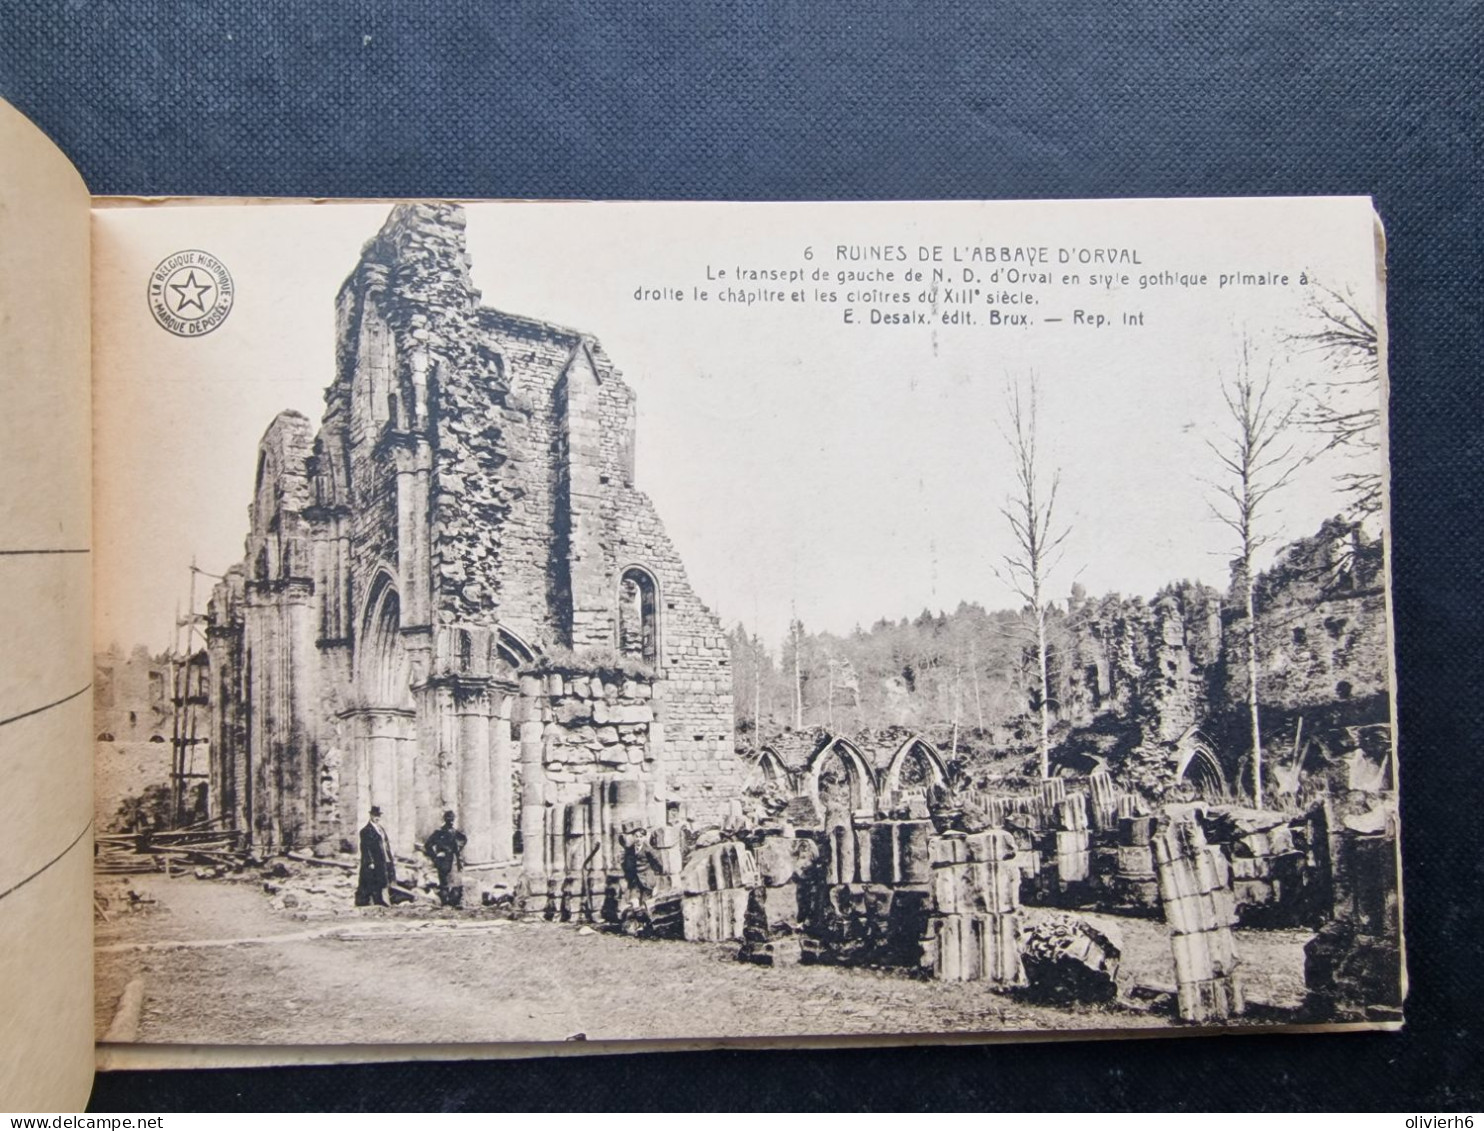 CARNET 10 CP BELGIQUE - BELGÏE (V2402) ABBAYE D'ORVAL (12 vues) La Belgique Historique